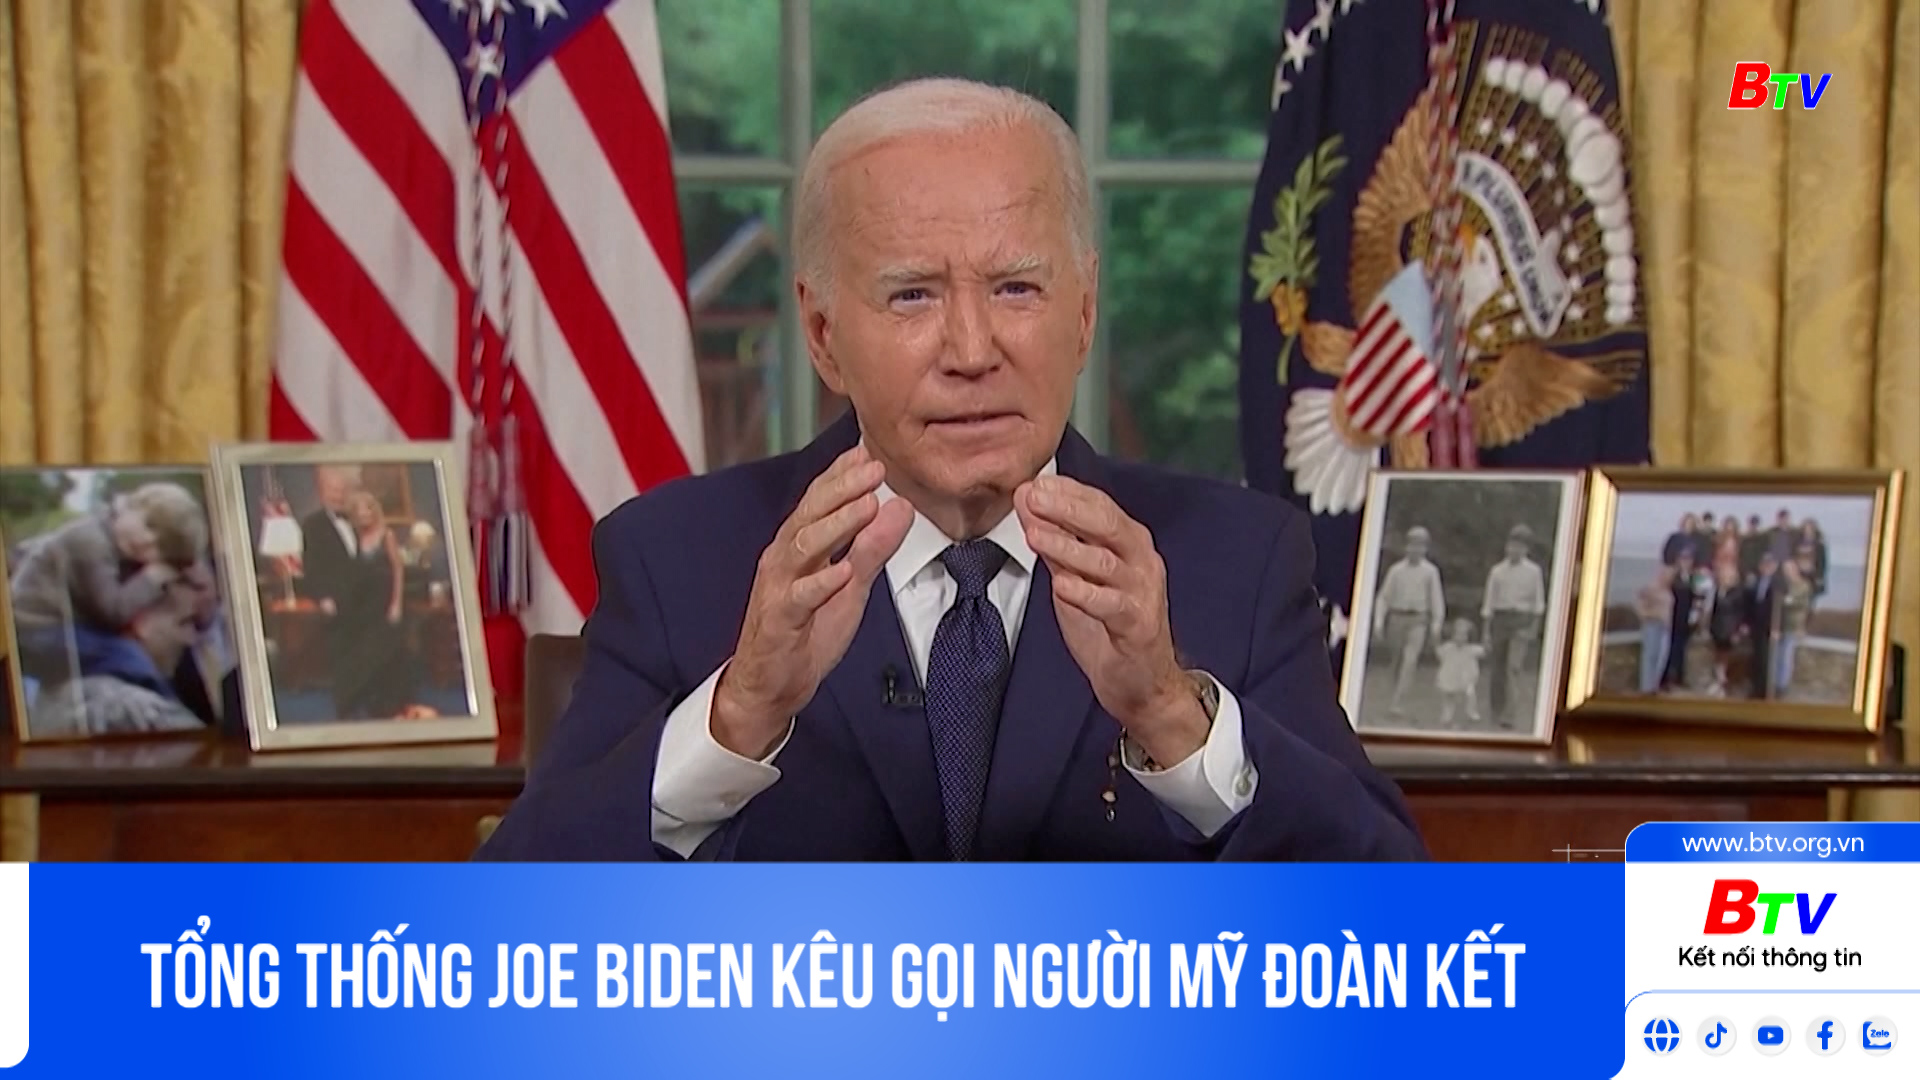 Tổng thống Joe Biden kêu gọi người Mỹ đoàn kết